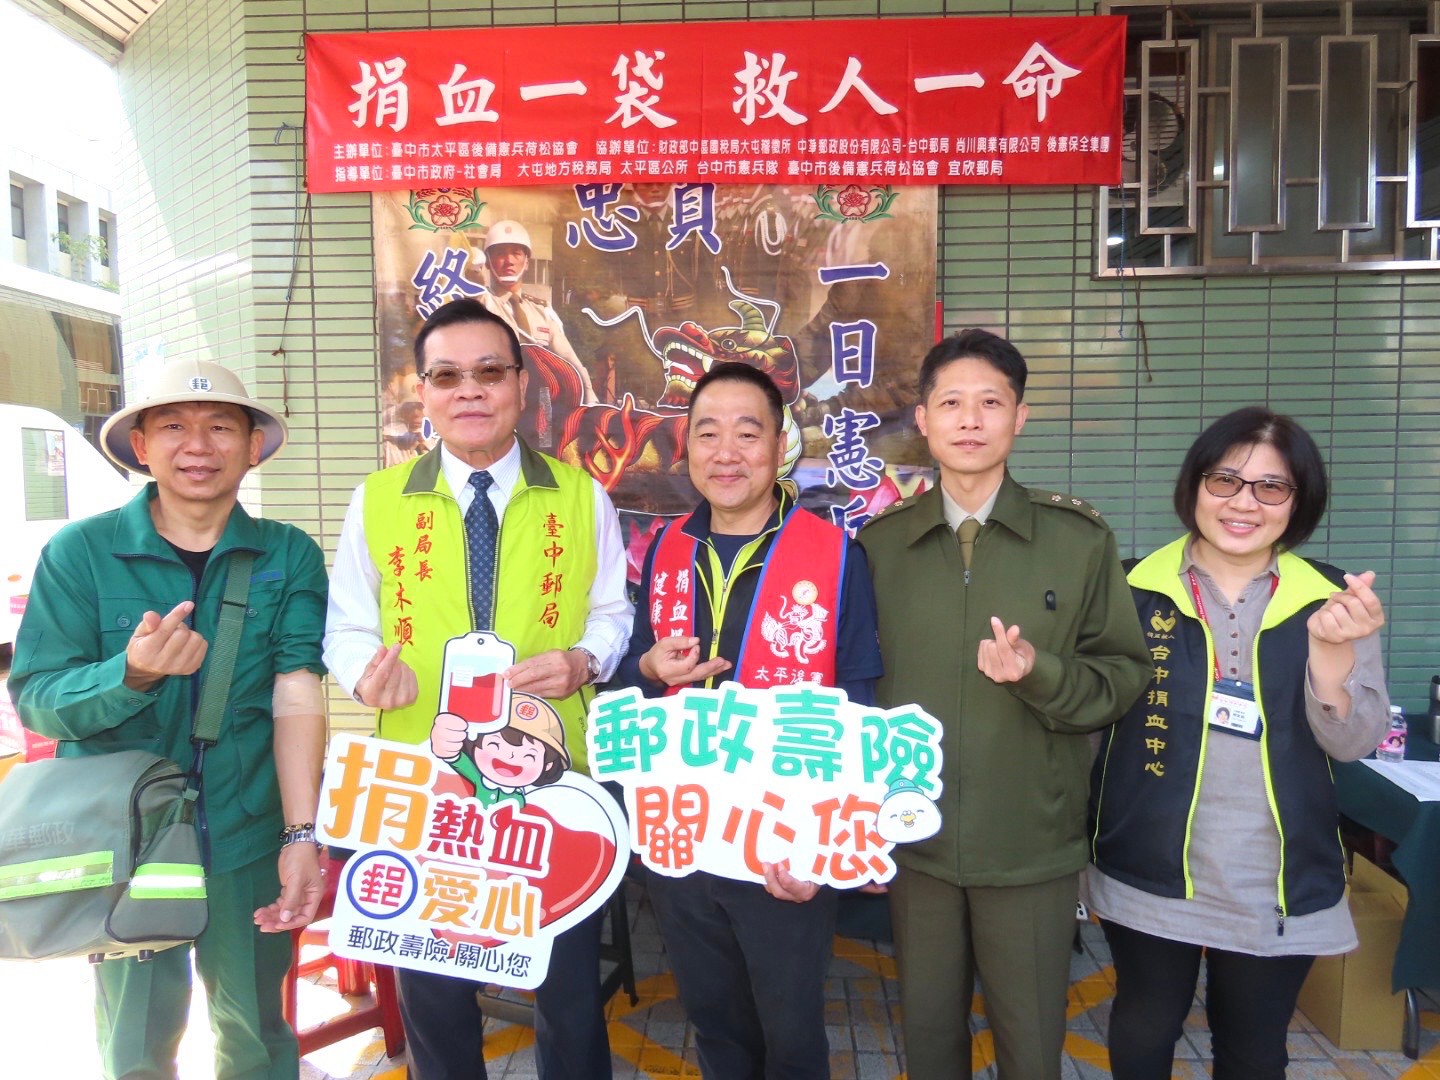 3月-臺中郵局與台中捐血中心聯合辦理 「捐熱血 郵愛心」公益活動